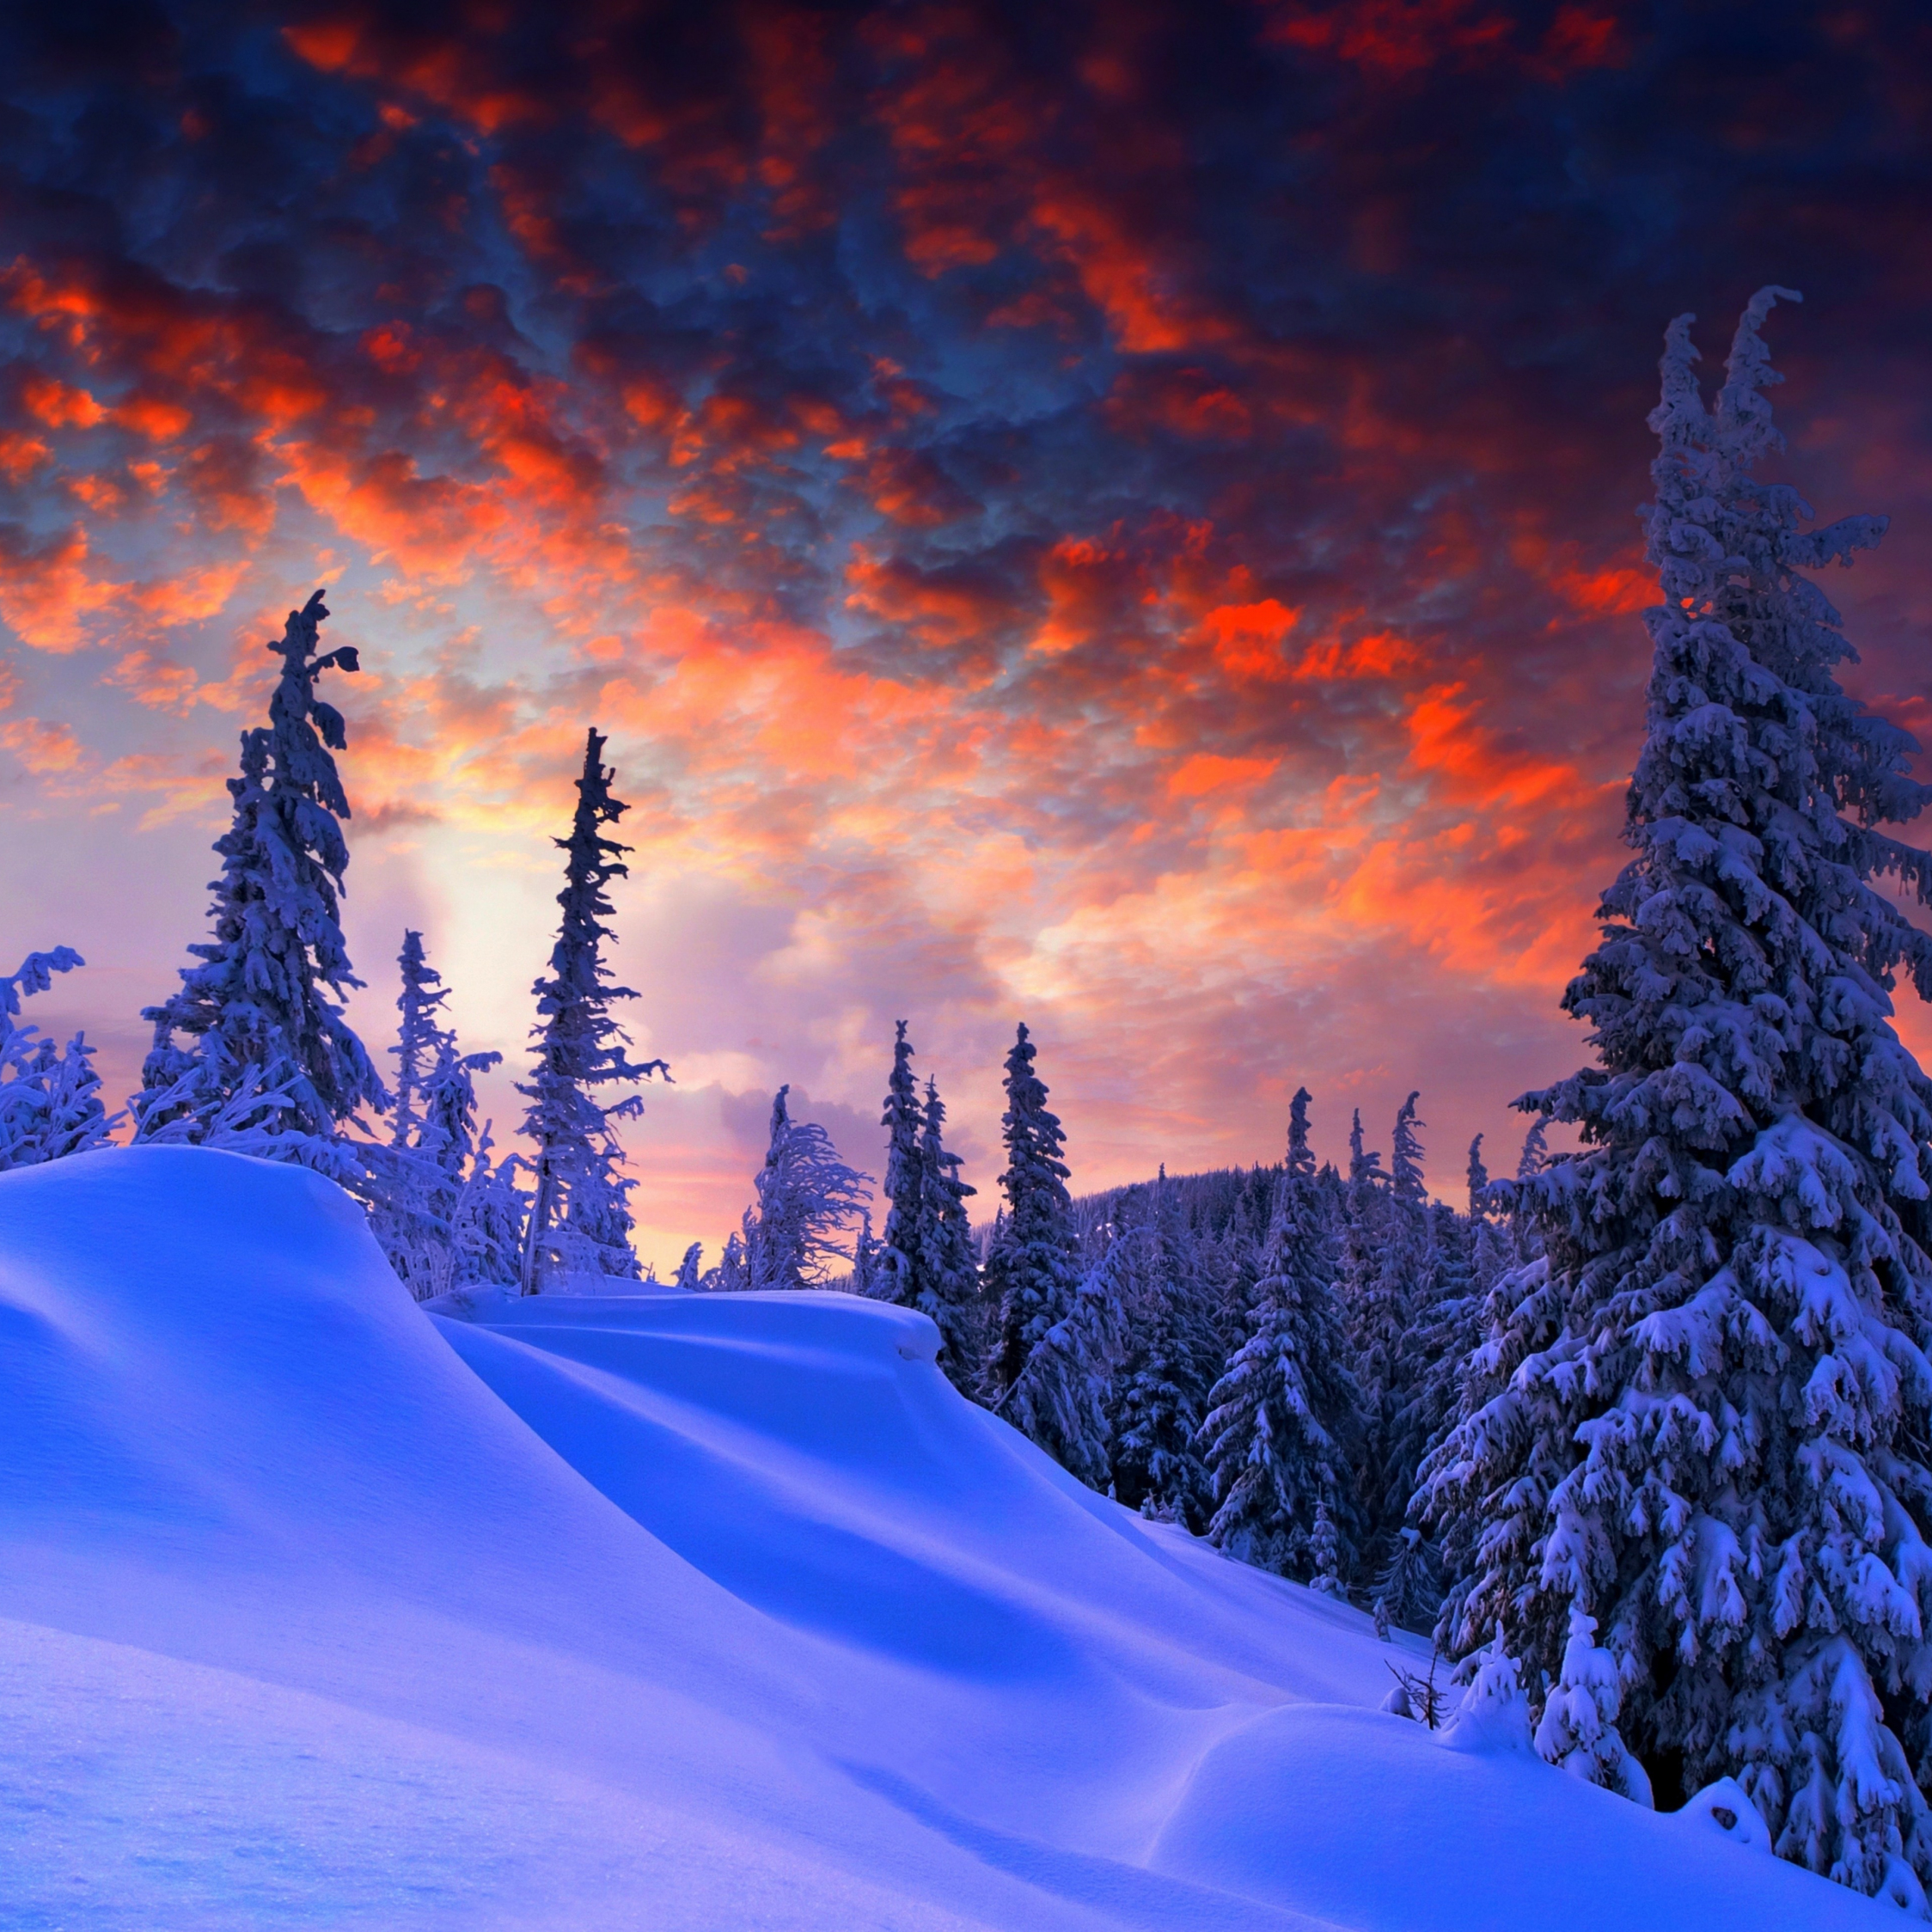 Download wallpaper 2248x2248 winter evening, beautiful sky, trees, clouds, ipad air, ipad air ipad ipad ipad mini ipad mini 2248x2248 HD background, 1199